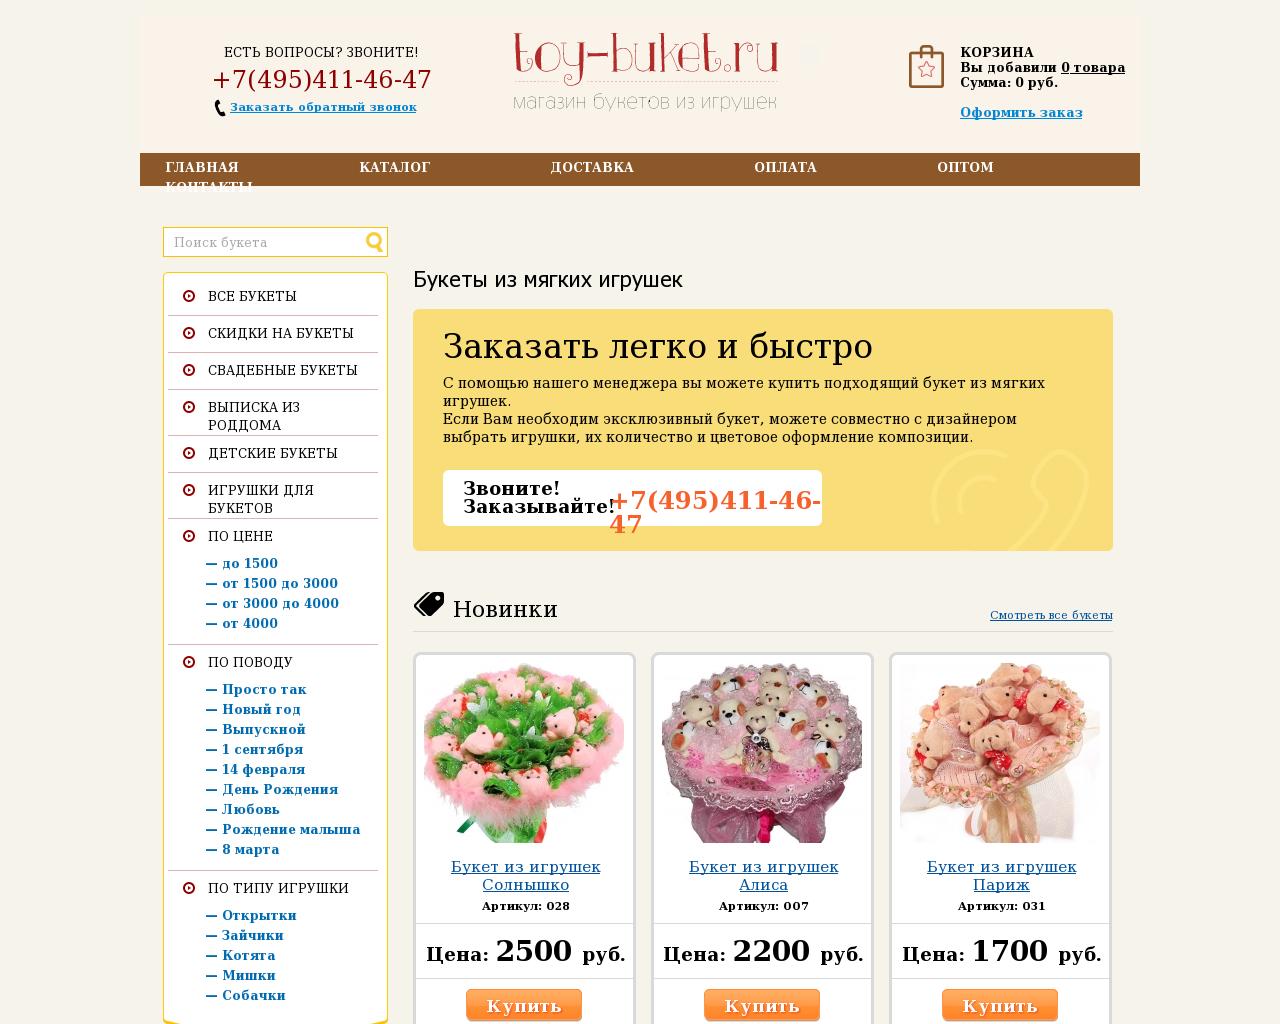 Изображение сайта toy-buket.ru в разрешении 1280x1024